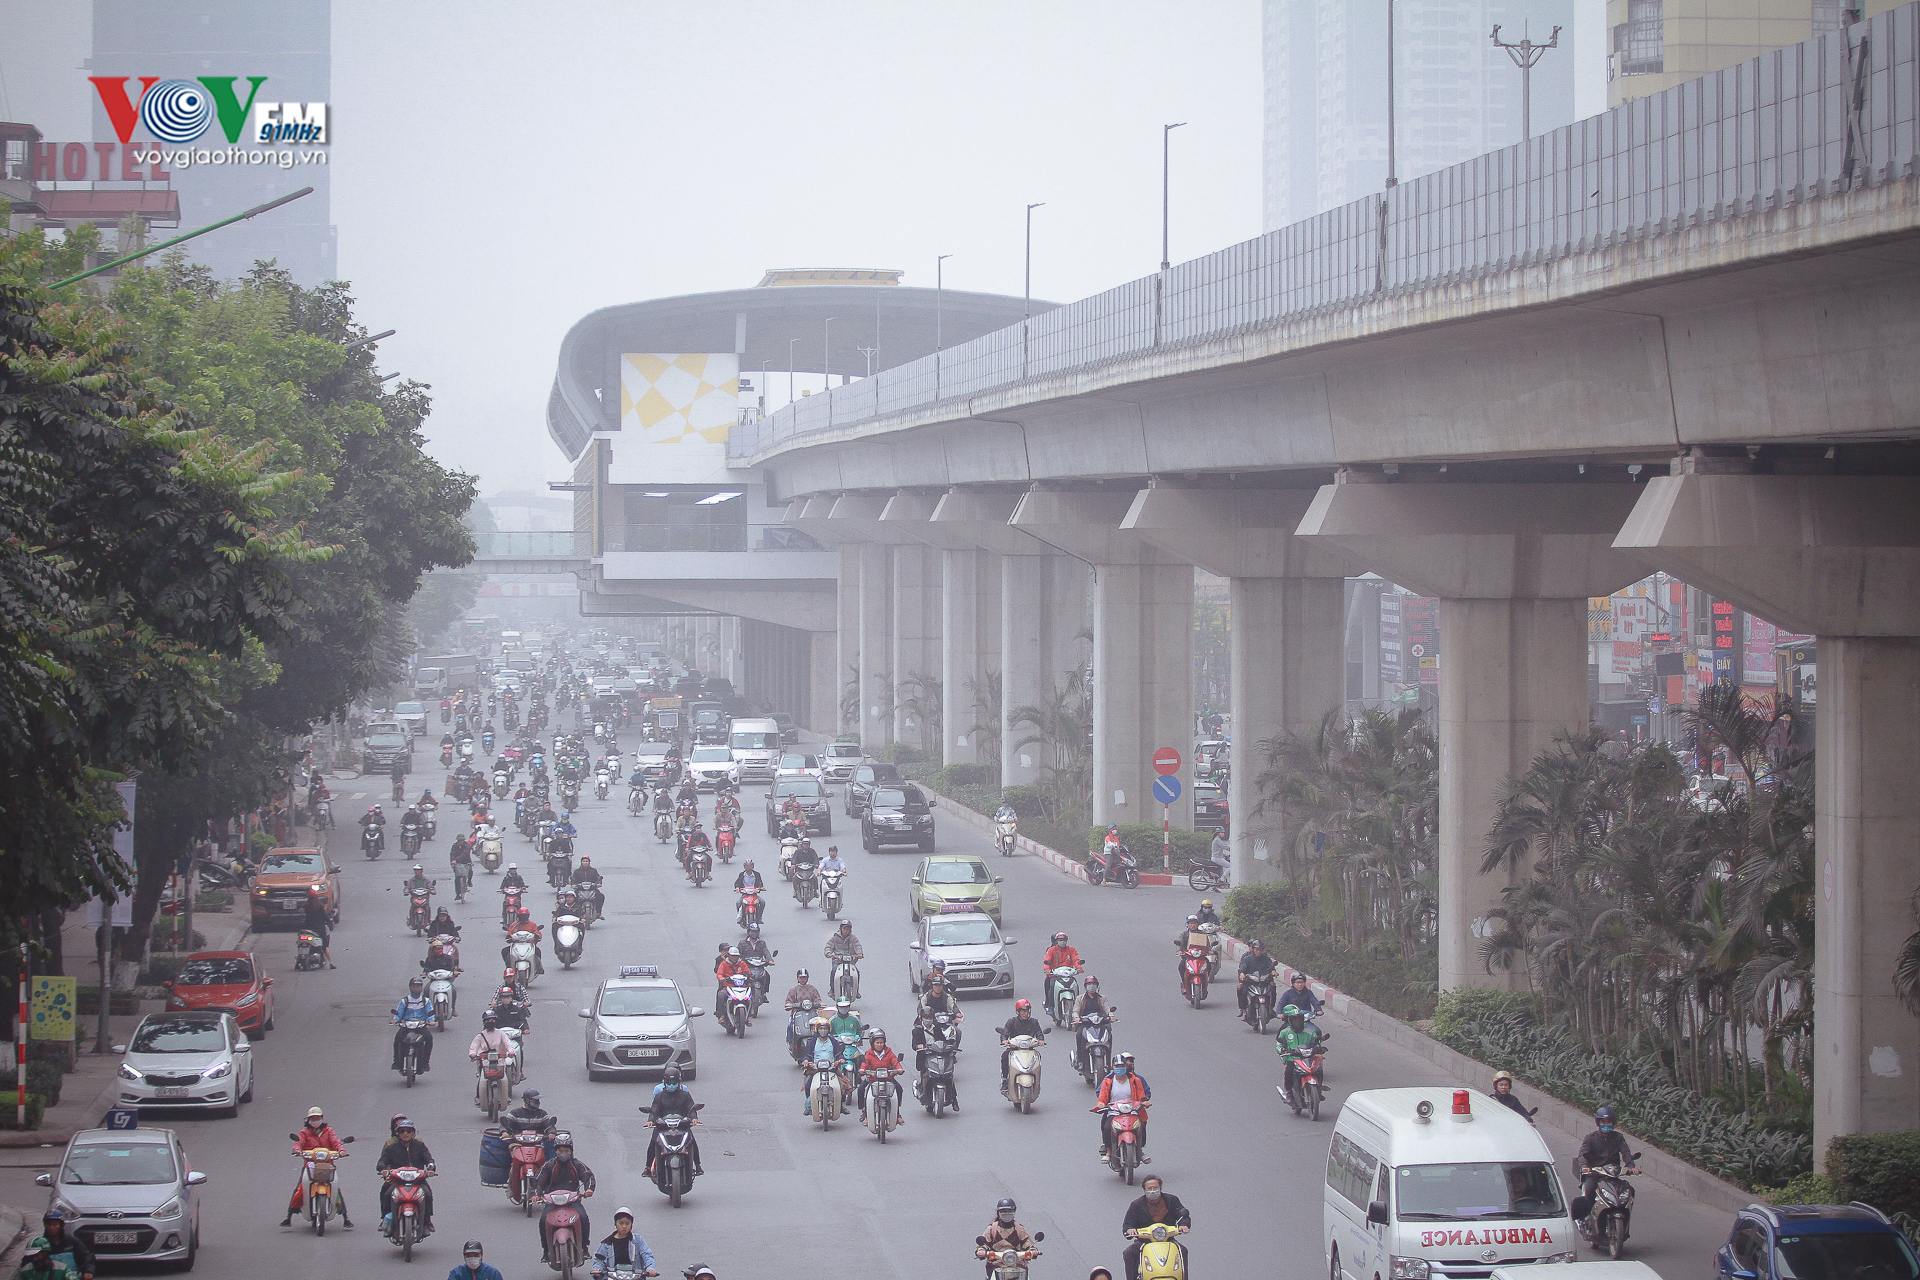 Đối với Dự án đường sắt đô thị Hà Nội, tuyến Cát Linh - Hà Đông, Thủ tướng giao Bộ Giao thông vận tải phối hợp với các cơ quan liên quan xem xét đưa vào sử dụng nếu bảo đảm tuyệt đối an toàn.